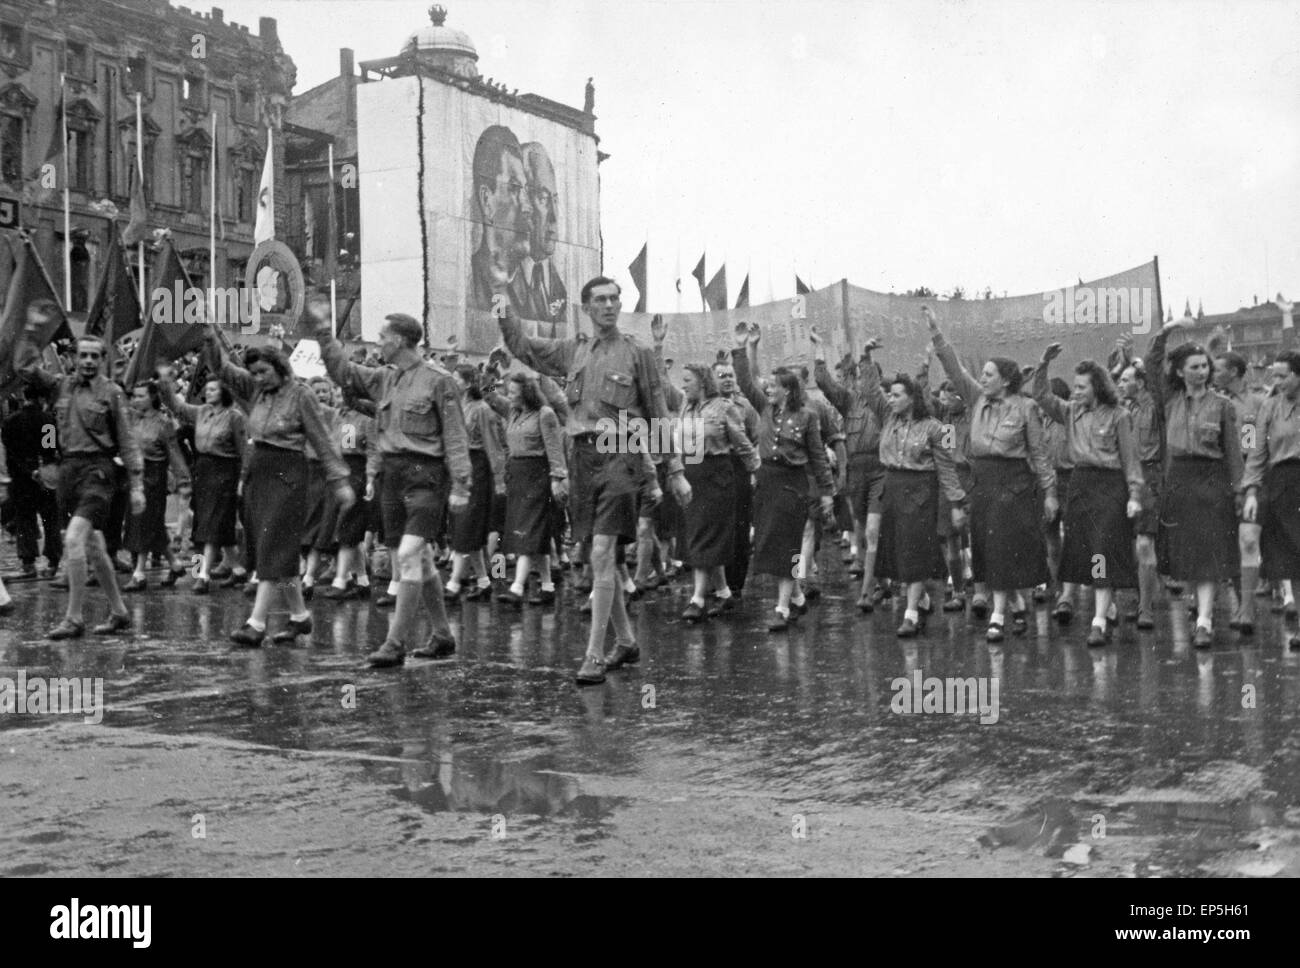 Maikundgebung mit Parade vor den Abbildungen von Josef Stalin und Wilhelm Pieck in Ost Berlin, DDR 1950er Jahre. 1st of May rall Stock Photo